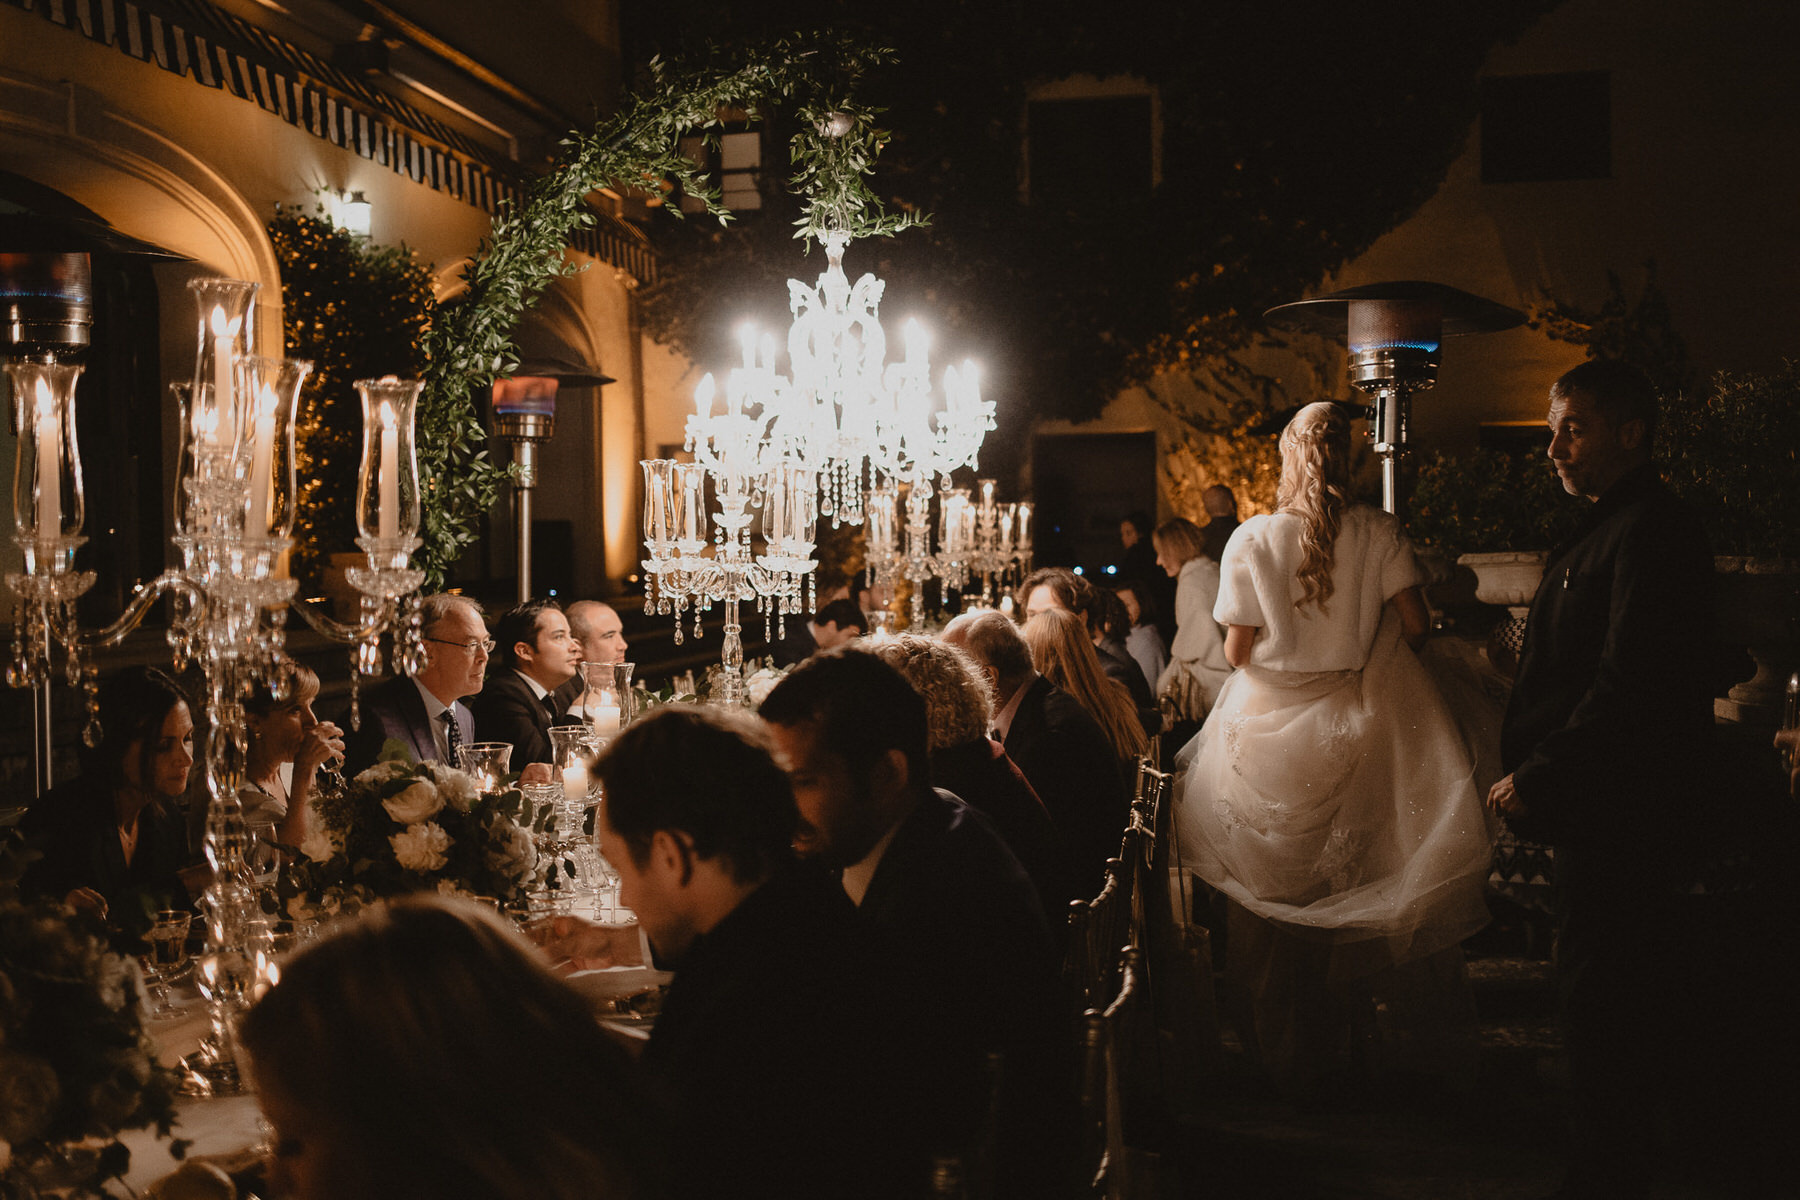 fotógrafos de bodas beto Perez girona, boda en Il Borro, tosacana Italia, casarse en una villa italiana, boda en florencia, bodas en la toscana, lamparas para cenas, ideas inspiracion de mesas para bodas